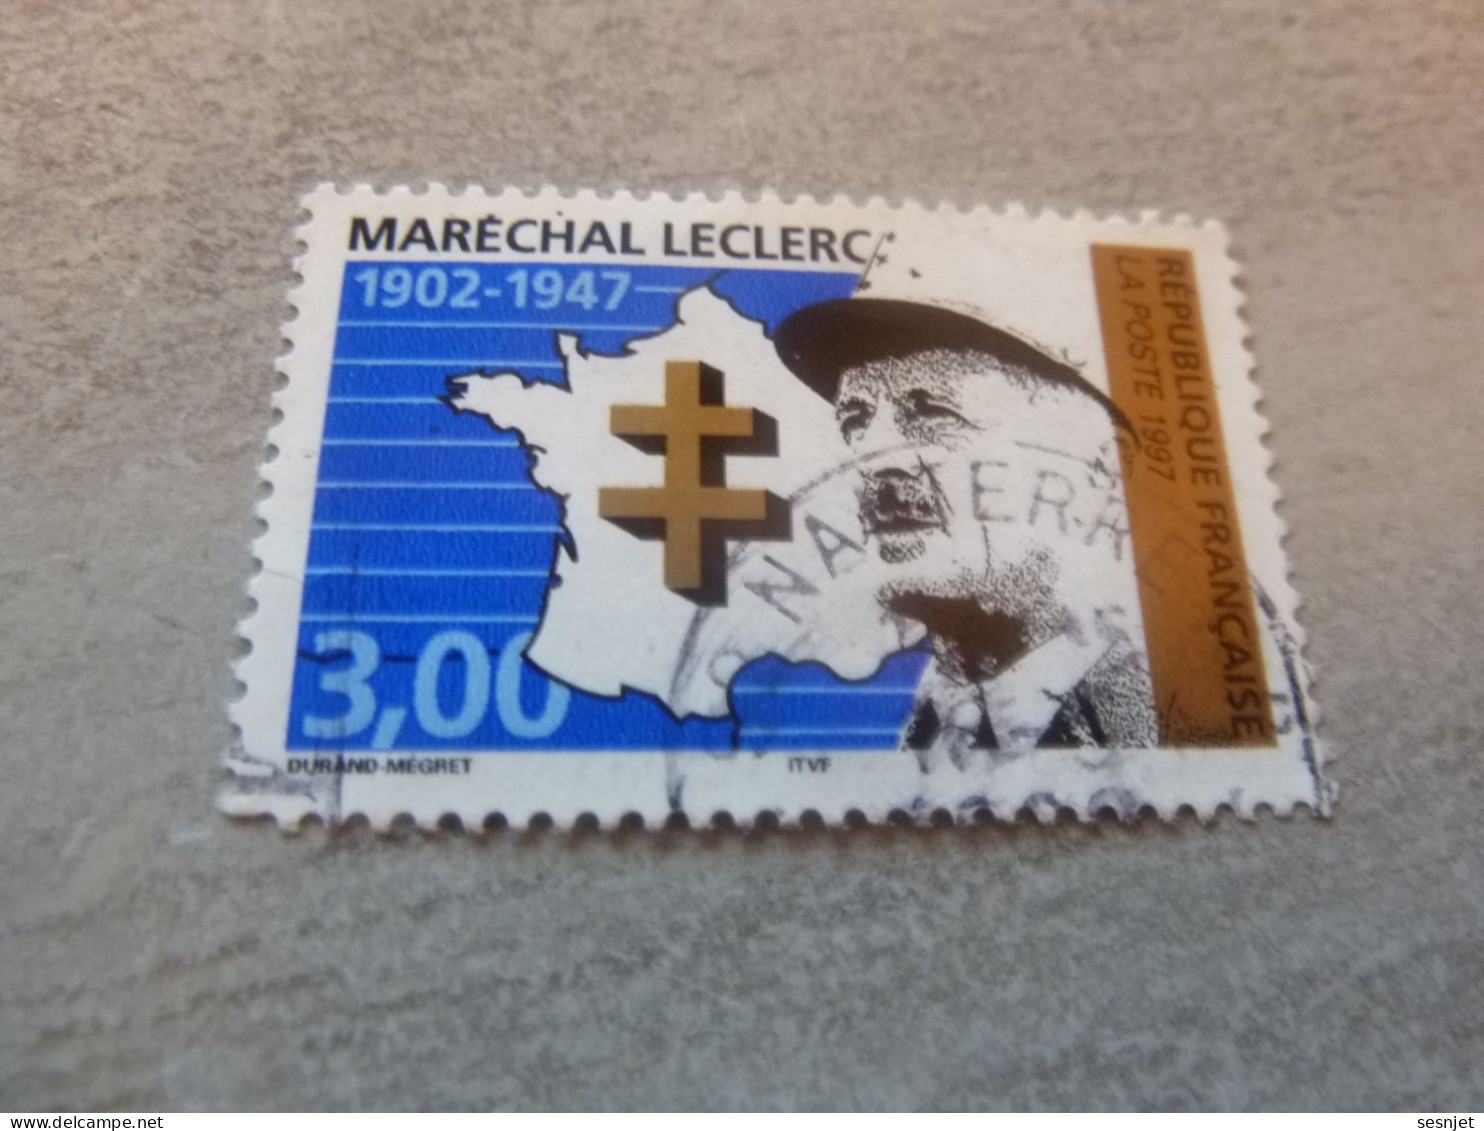 Général Leclerc (1902-1947) Maréchal - 3f. - Yt 3126 - Vert, Noir Et Bleu - Oblitéré - Année 1997 - - Oblitérés